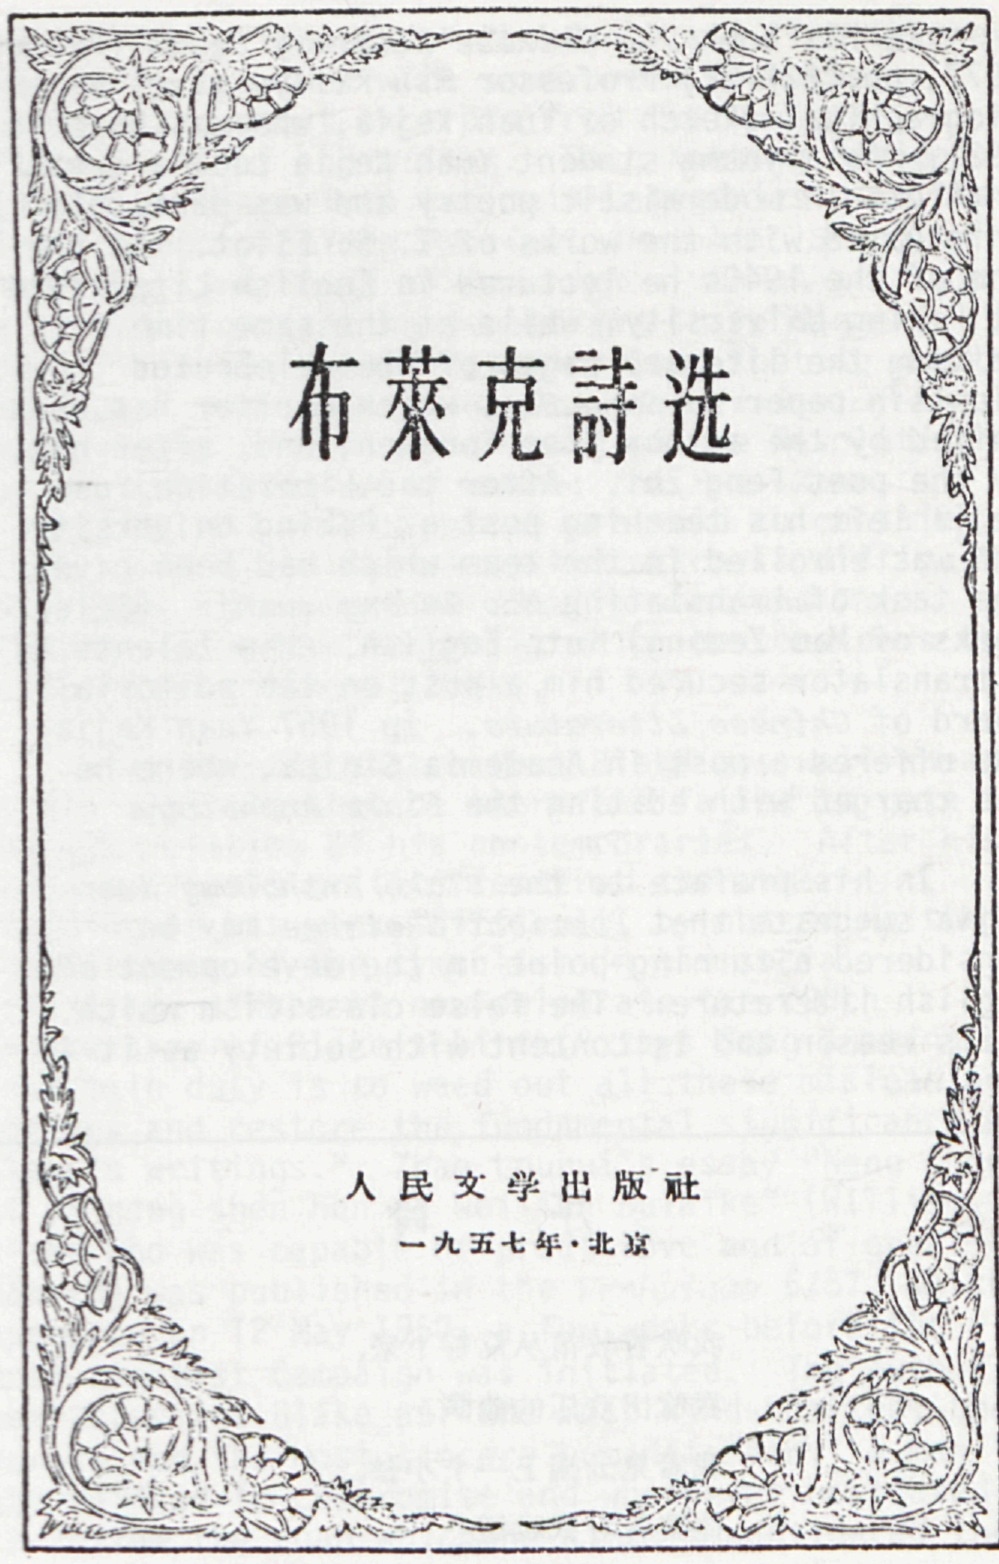 布萊克詩选
          
          人民文学出版社
          一九五七年 · 北京